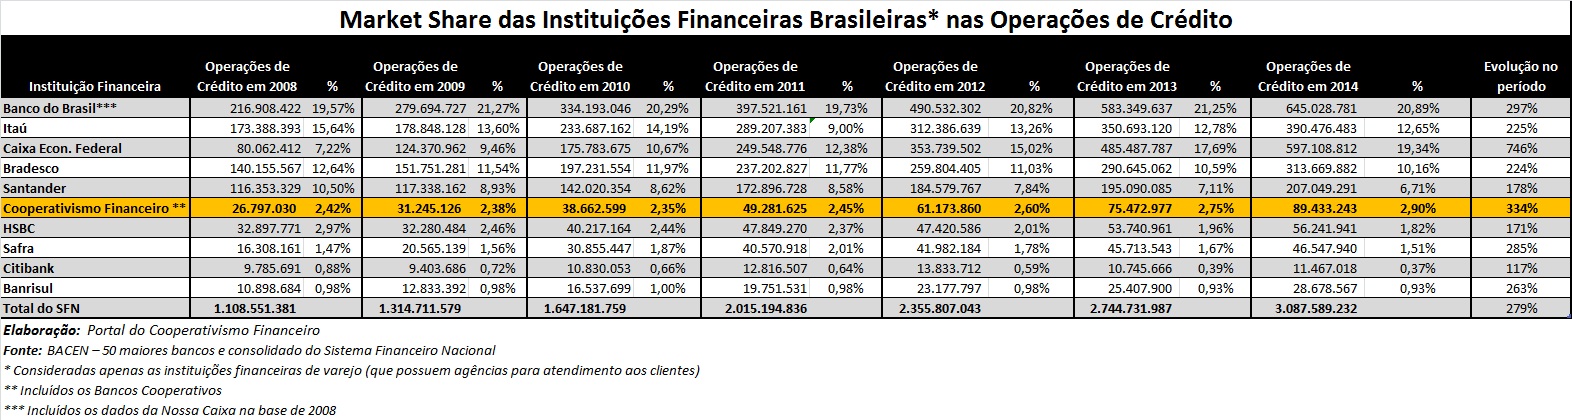 2014-Dados_Cooperativas_Financeiras_crédito